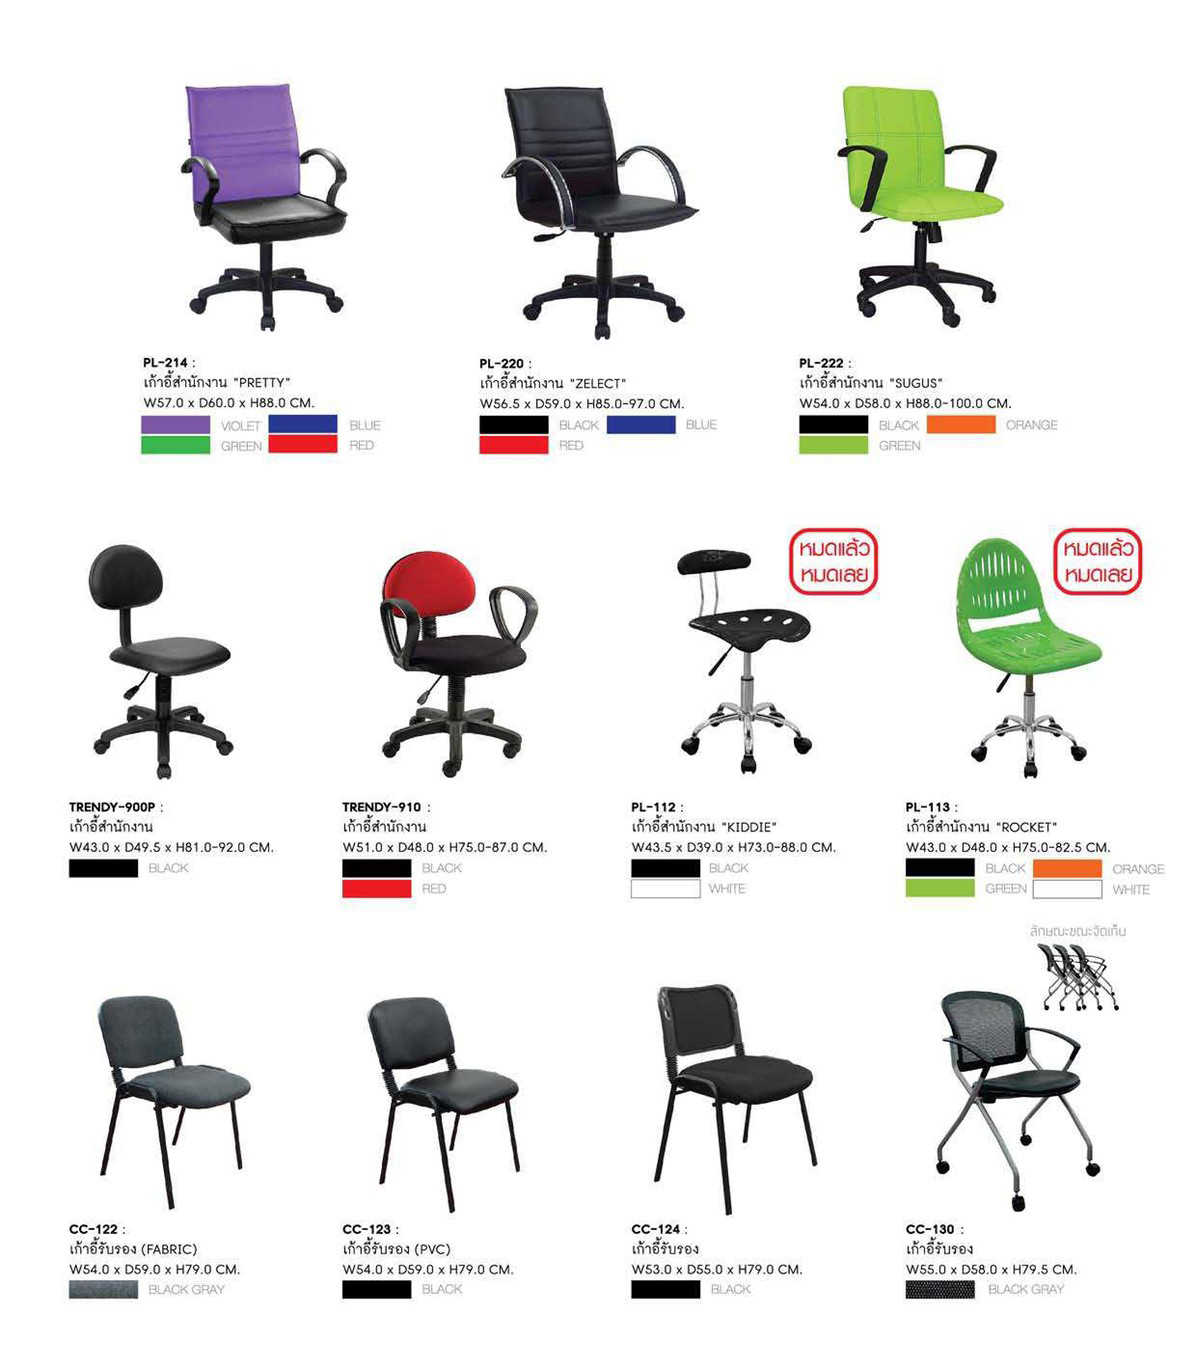 83043::PL-222::เก้าอี้สำนักงาน SUGUS ขนาด 540X580X880-1000 มม. มี3สี สีดำ,เขียว,ส้ม เก้าอี้สำนักงาน SURE